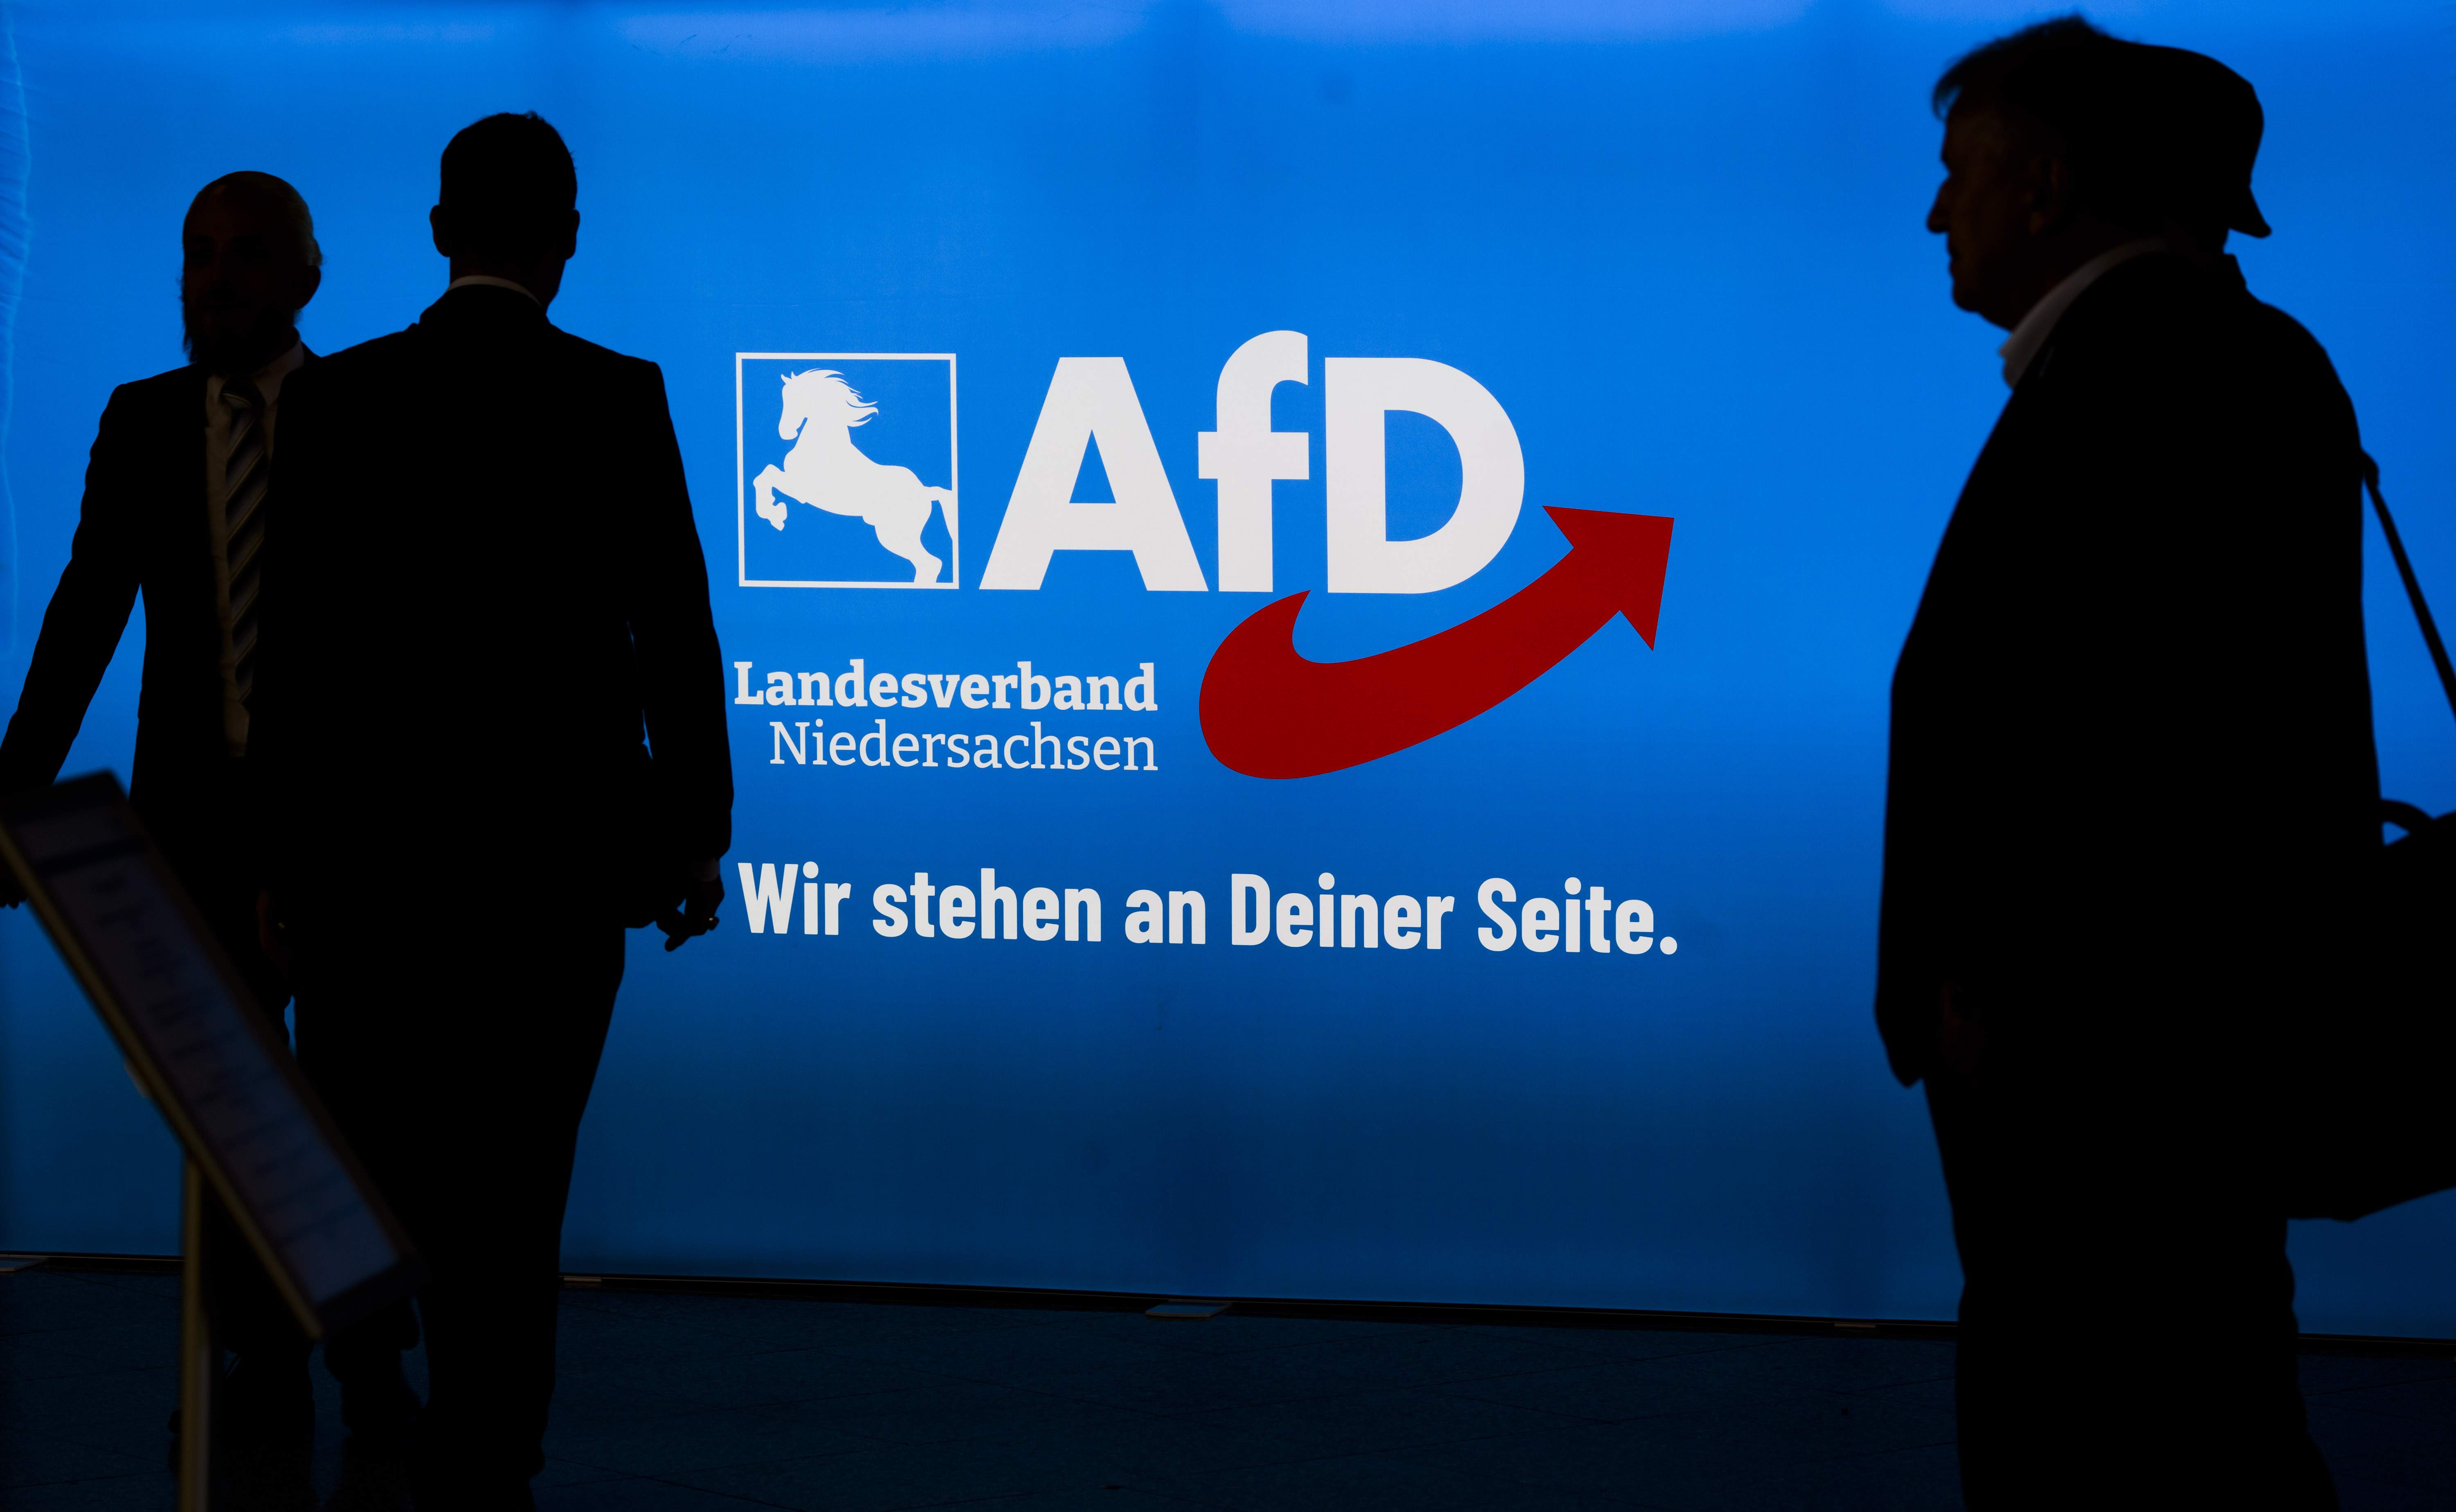 Nou atac amb ganivet a un polític d'extrema dreta a Alemanya: ferit Heinrich Koch (AfD)